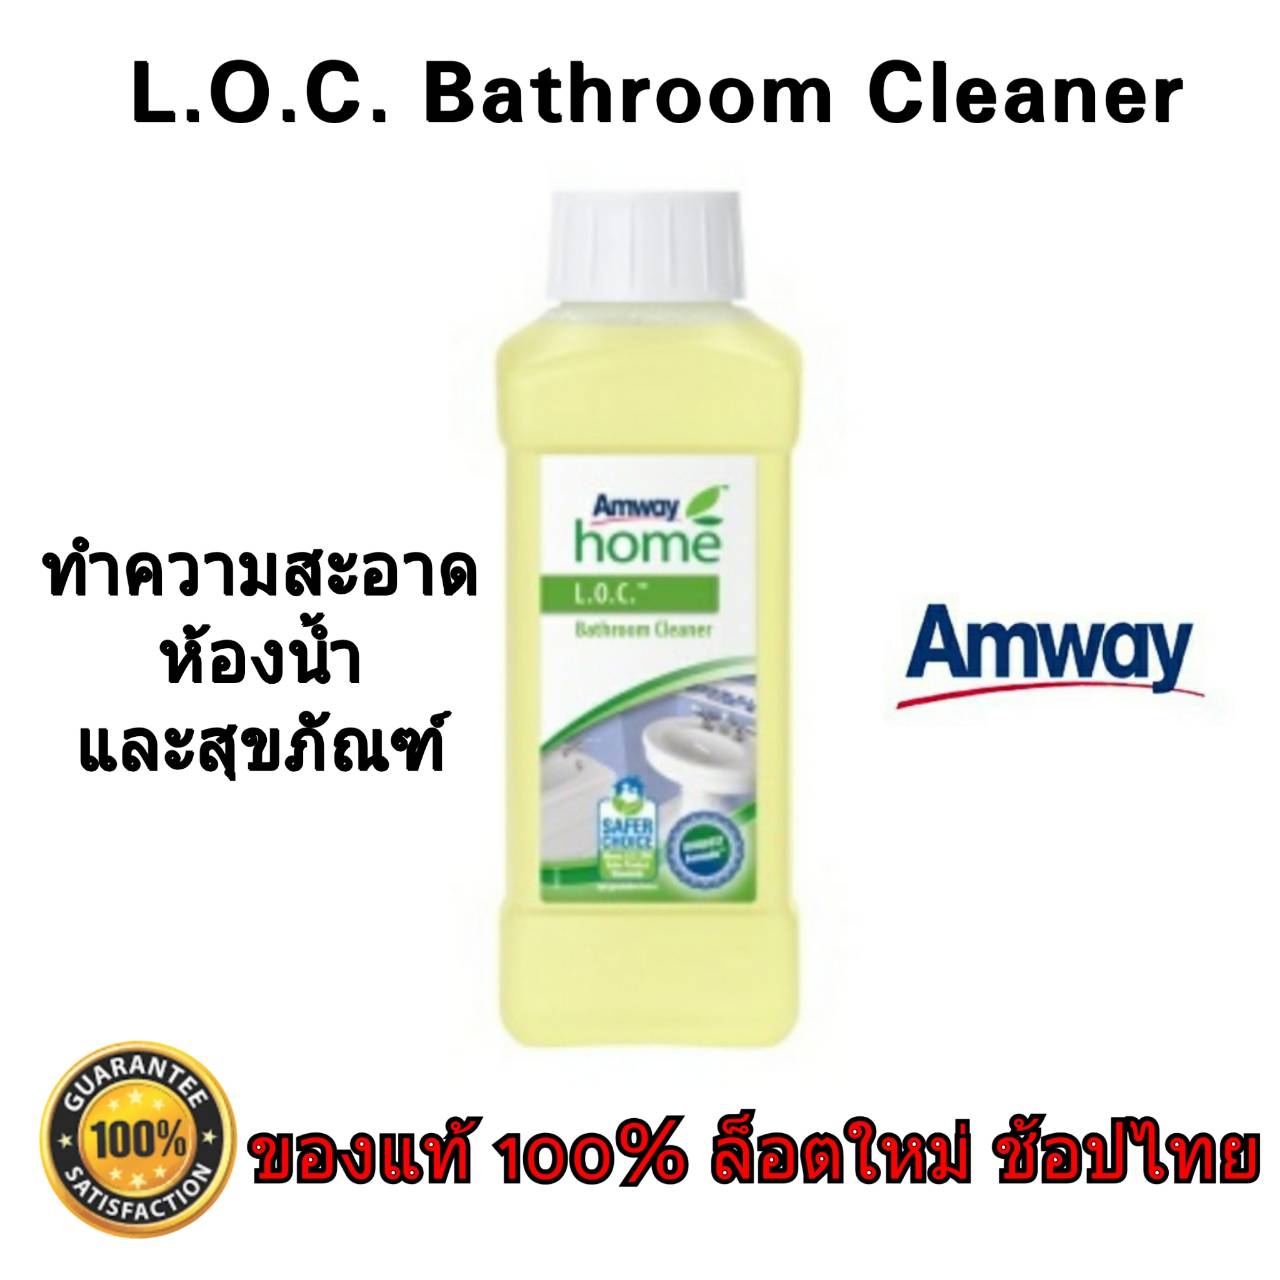 [ของแท้ 100% ช้อปไทย] Amway home L.O.C. Bathroom Cleaner ผลิตภัณฑ์ทำความสะอาดห้องน้ำ ขจัดคราบสกปรกคราบสบู่คราบหินปูนตามพื้นห้องน้ำ 1ขวด 500 ml